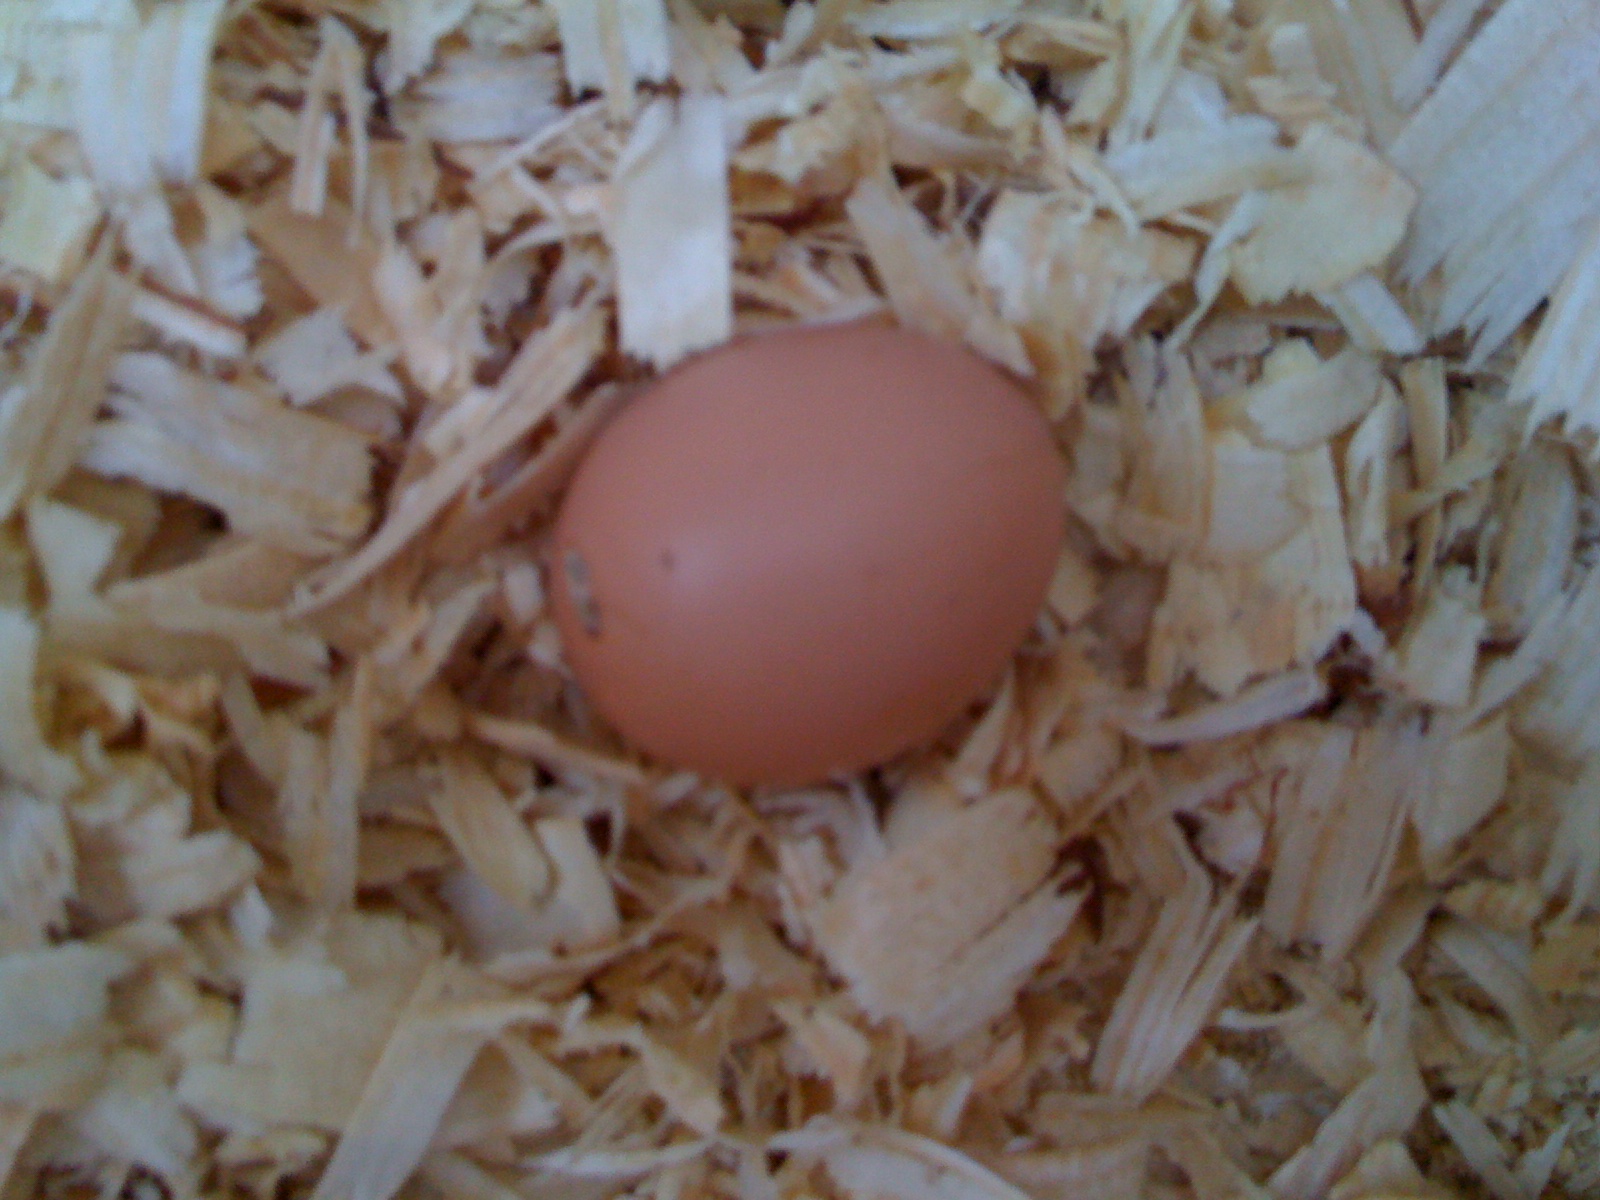 1st egg